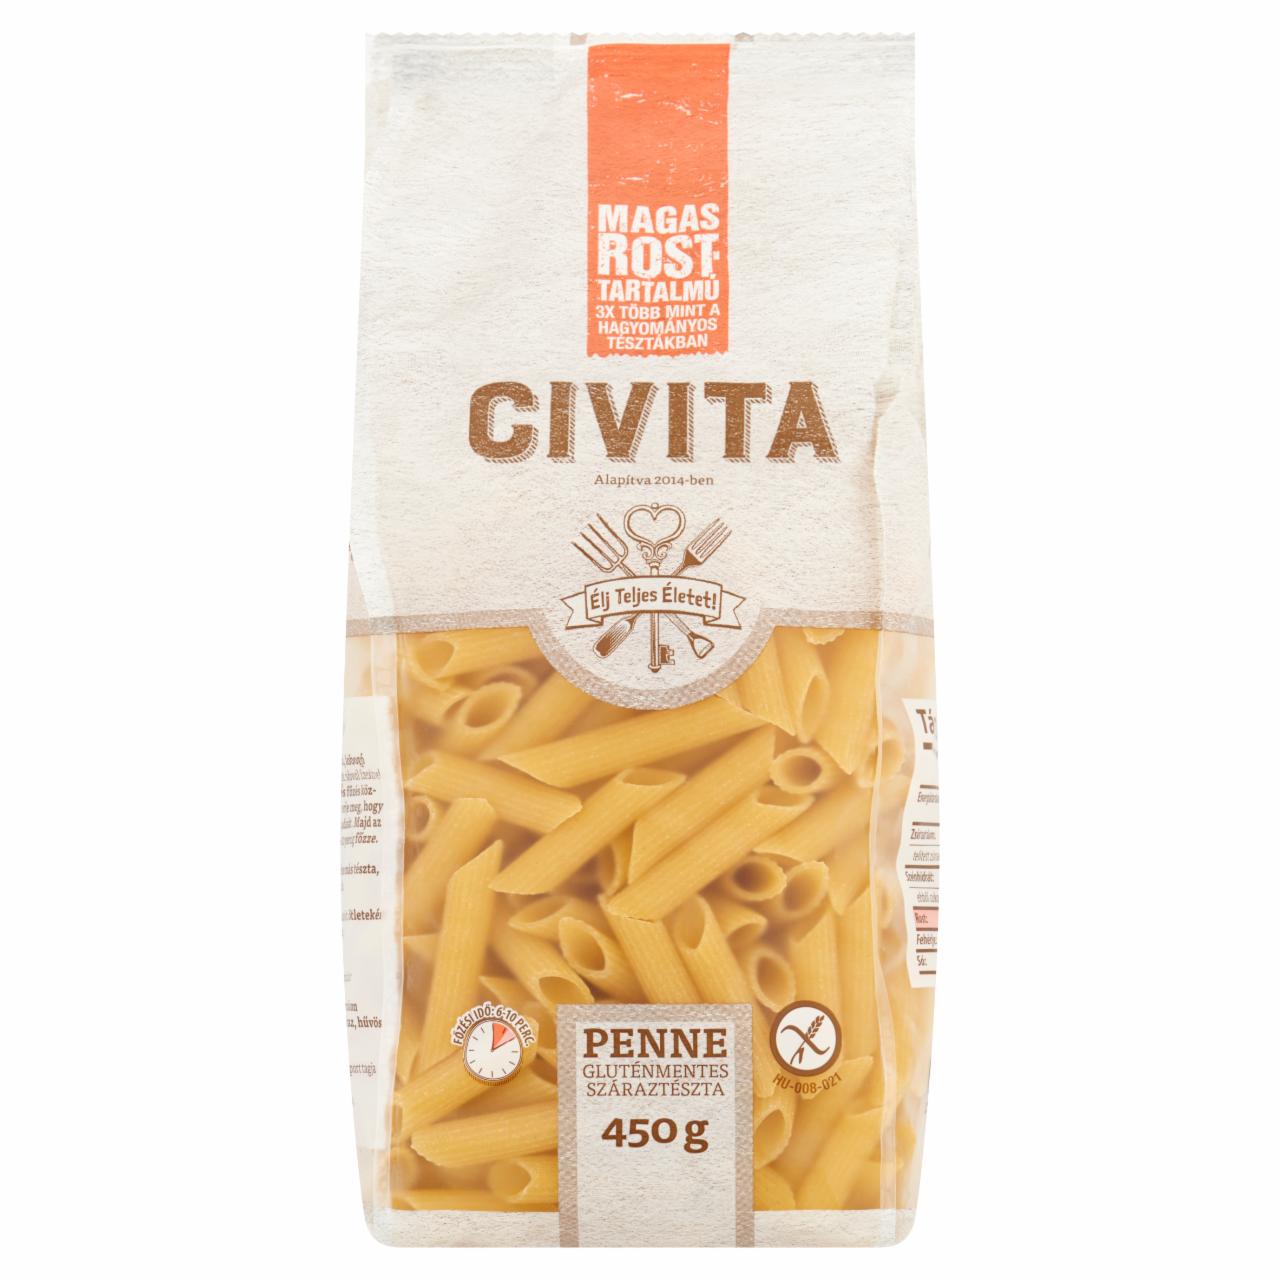 Képek - Civita penne gluténmentes száraztészta 450 g